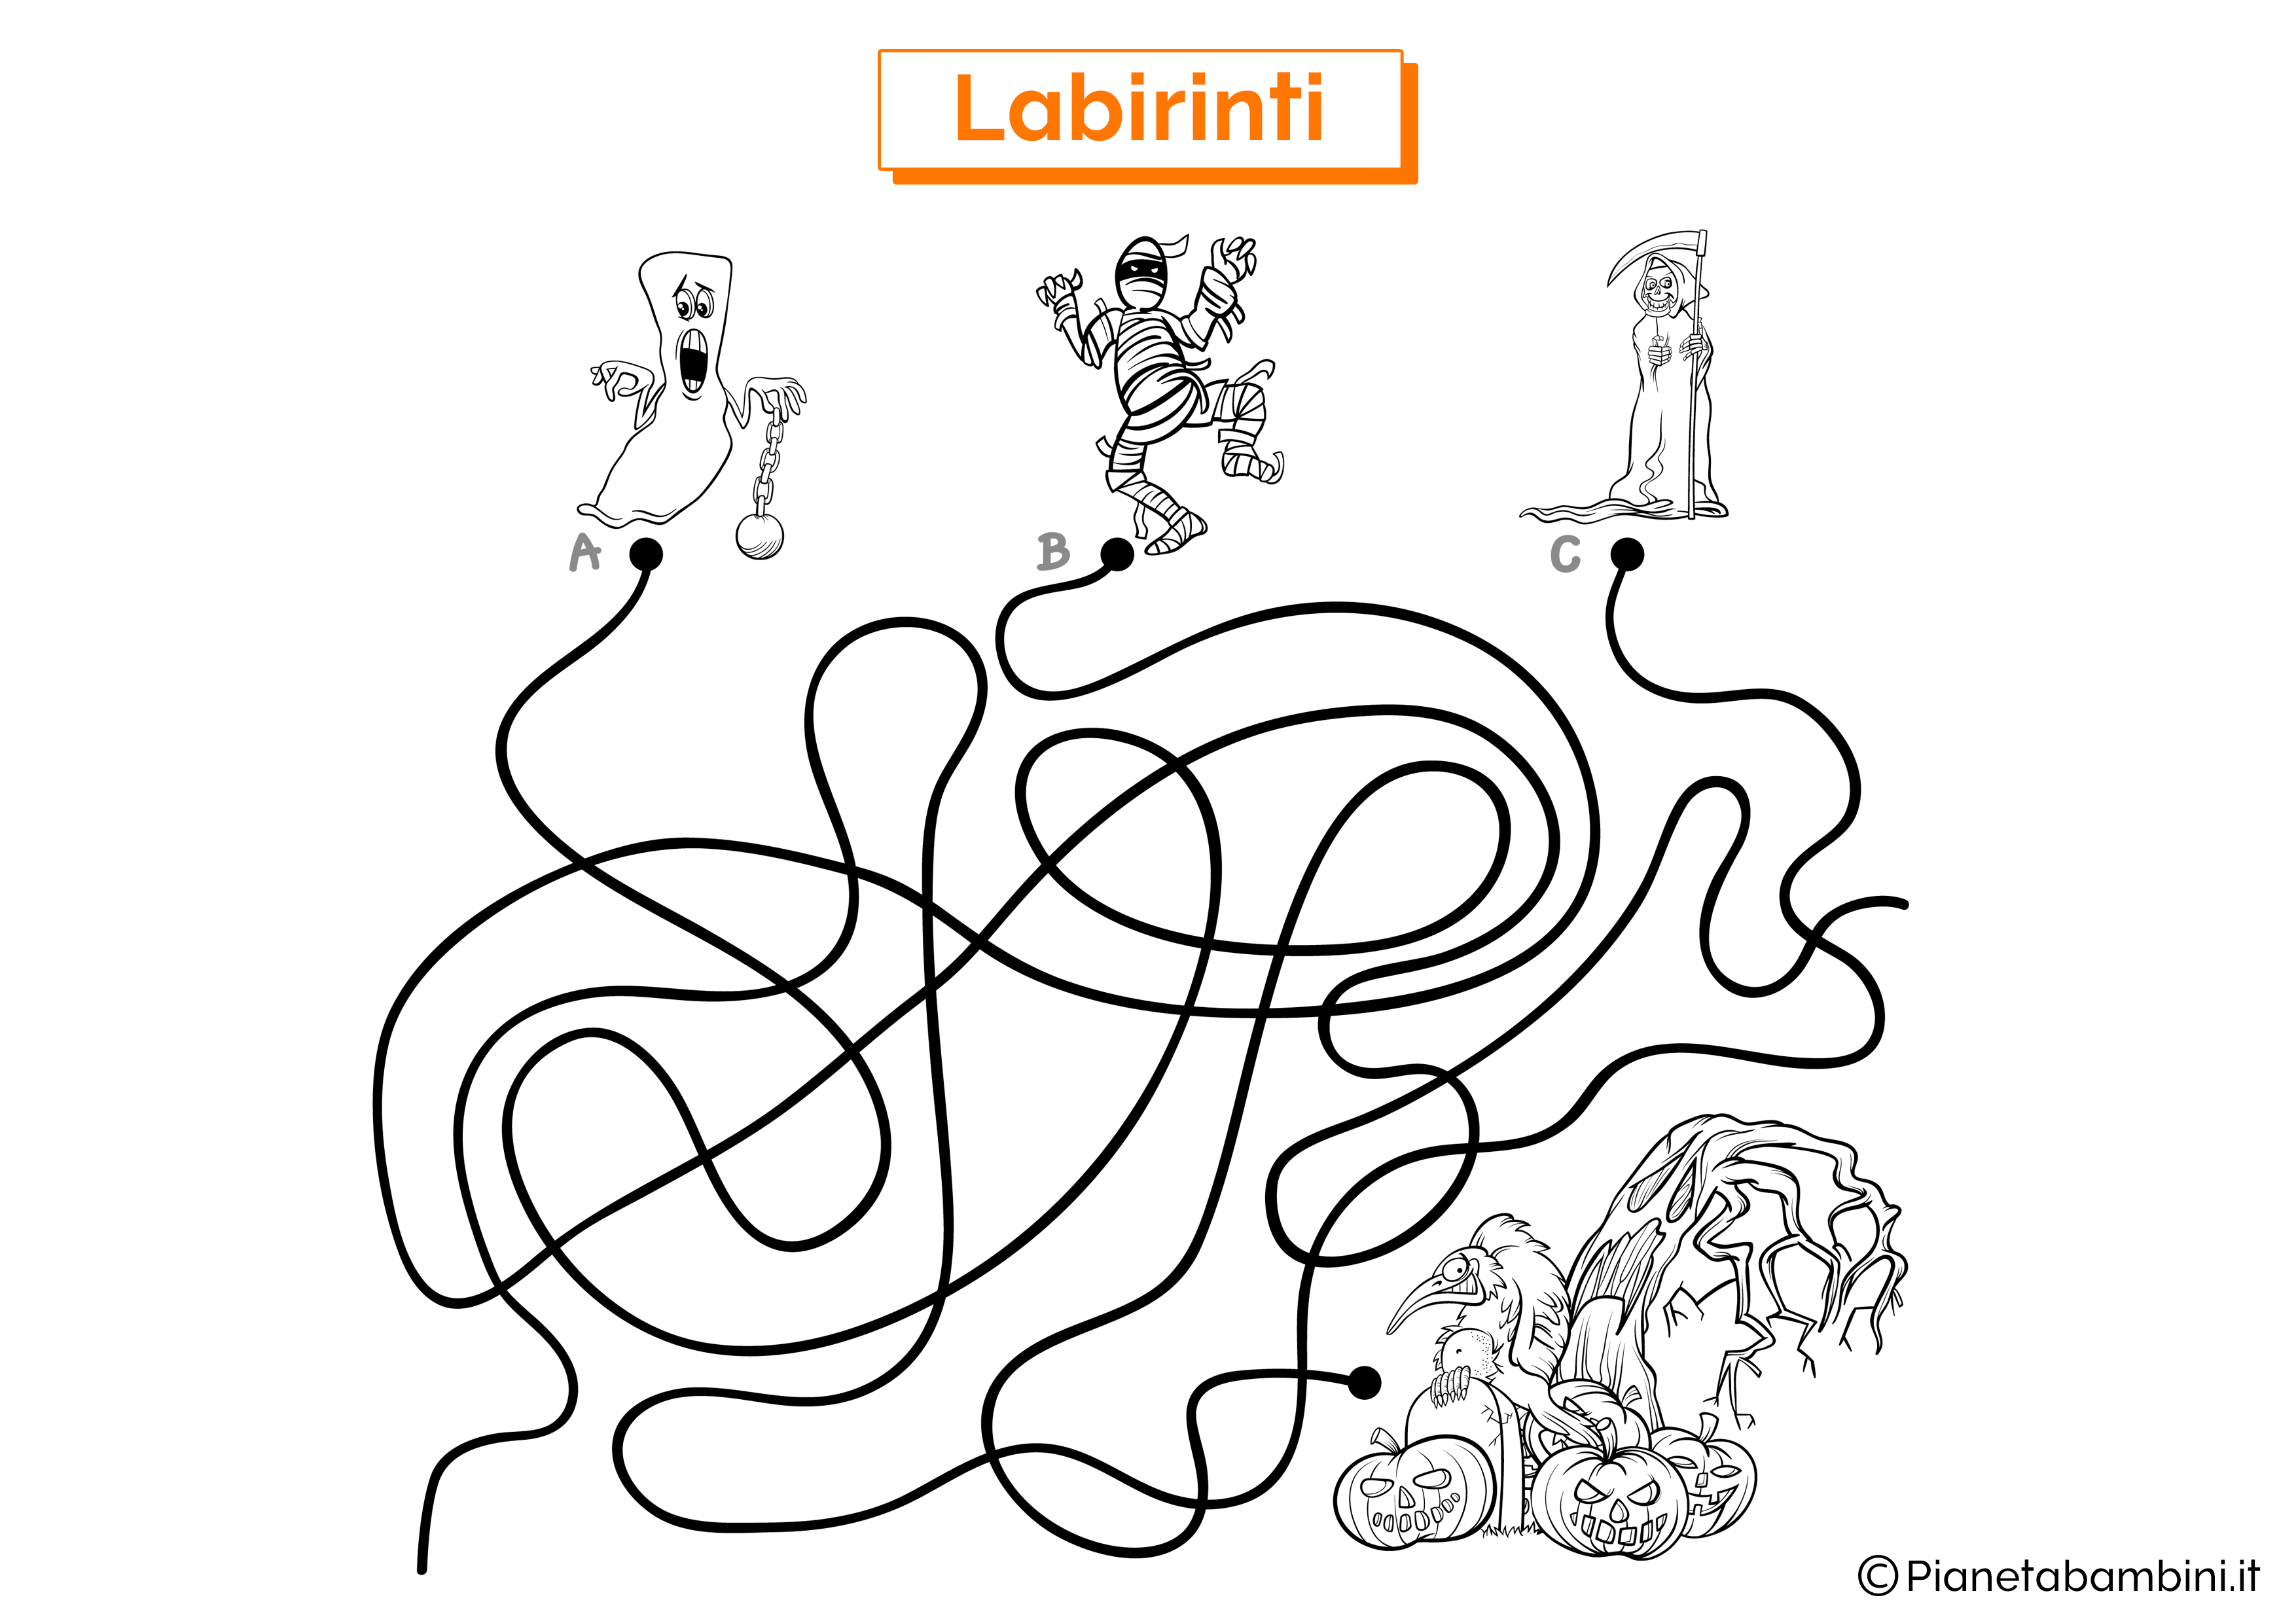 Labirinto con percorso sui mostri da stampare